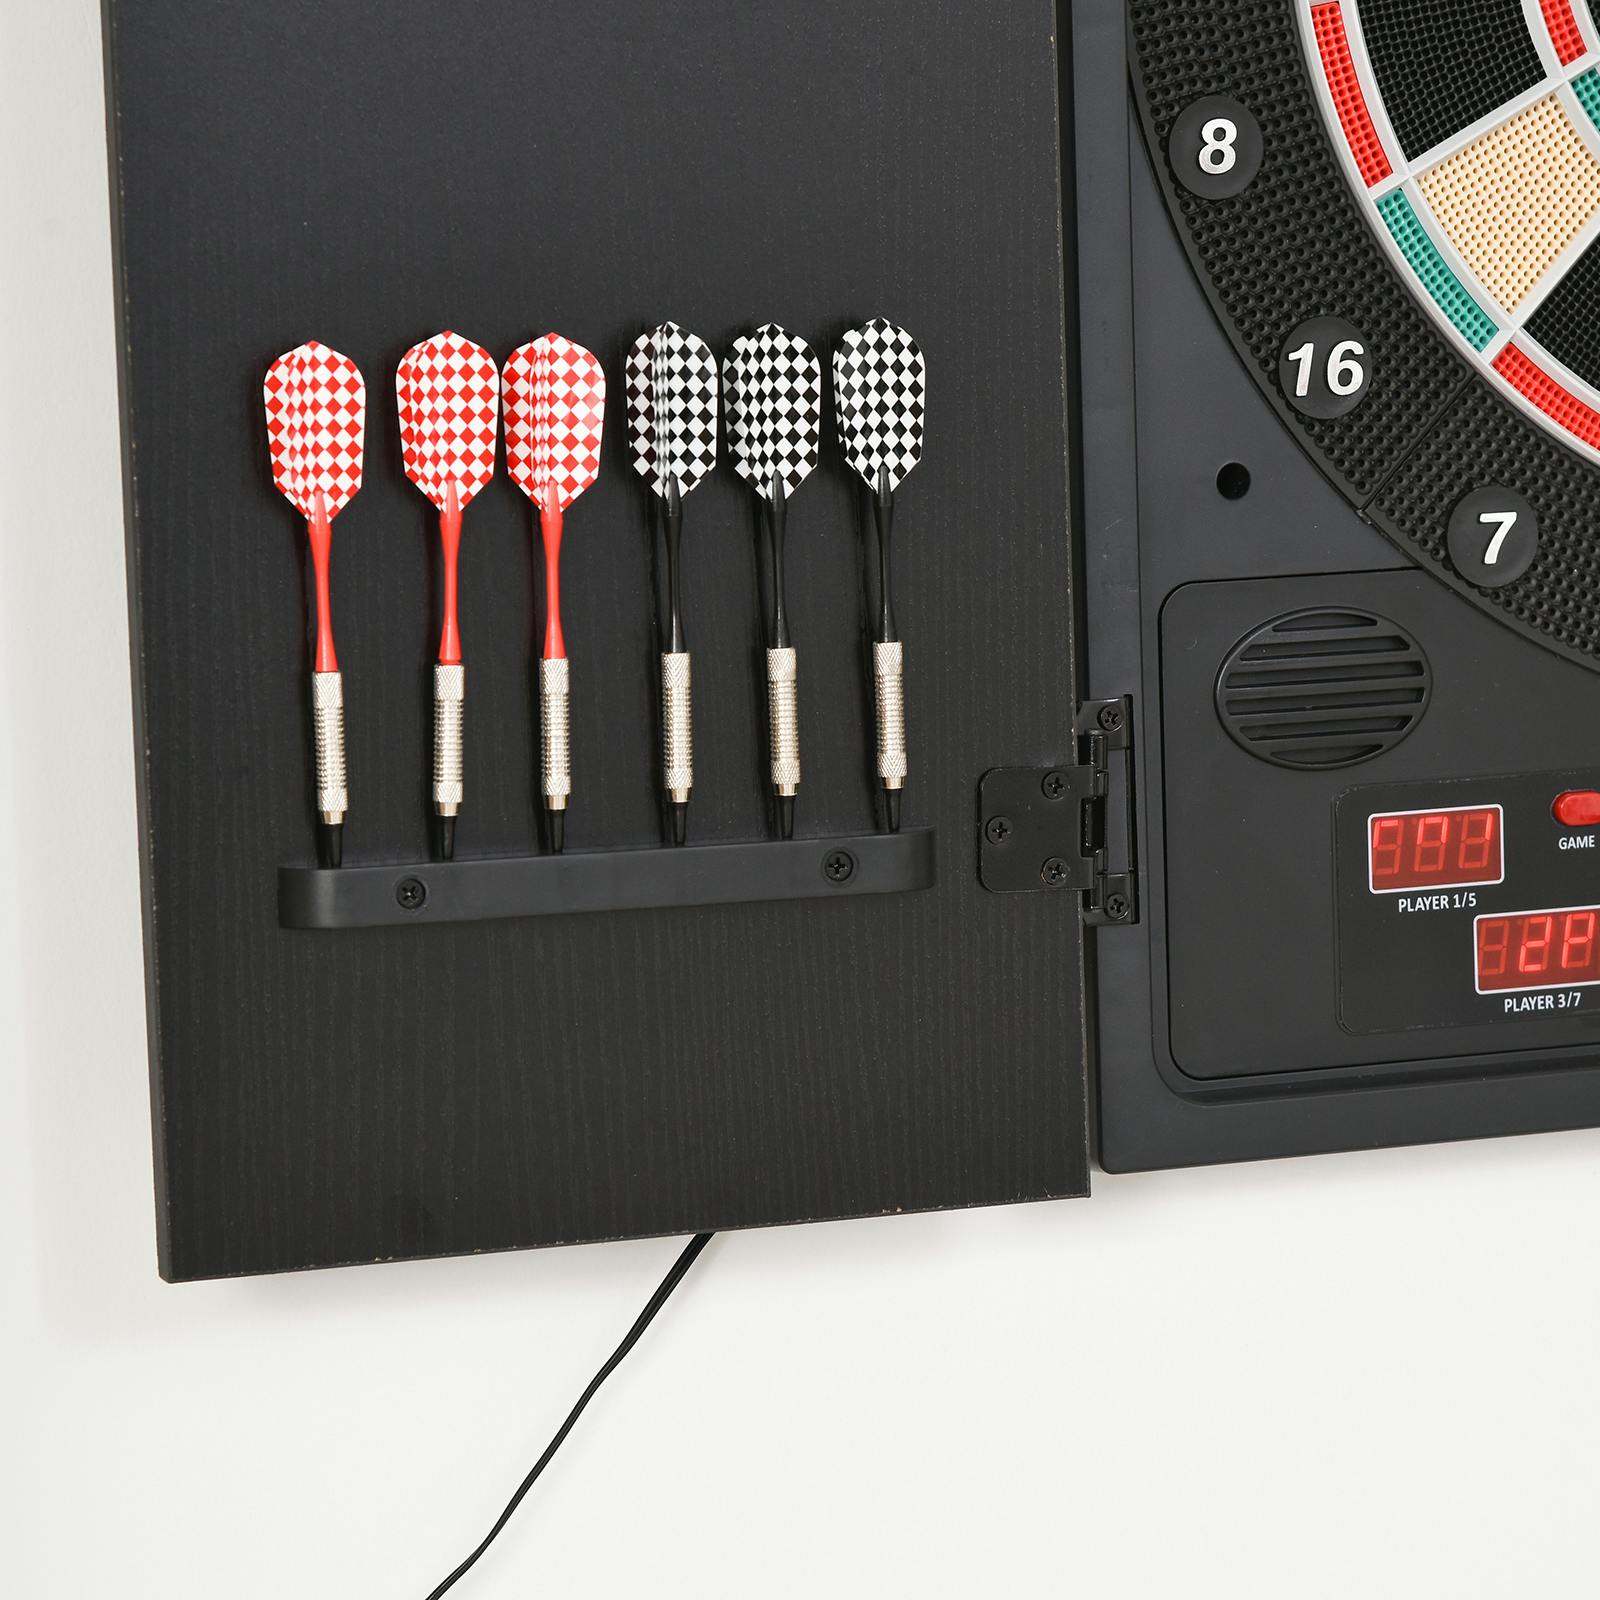  Diana eléctrica para 1 a 16 jugadores, pantalla LED tradicional  de doble puerta de madera, máquina de dardos eléctricos, con 12 dardos  suaves, 27 juegos principales, 243 subjuegos, objetivo de dardos